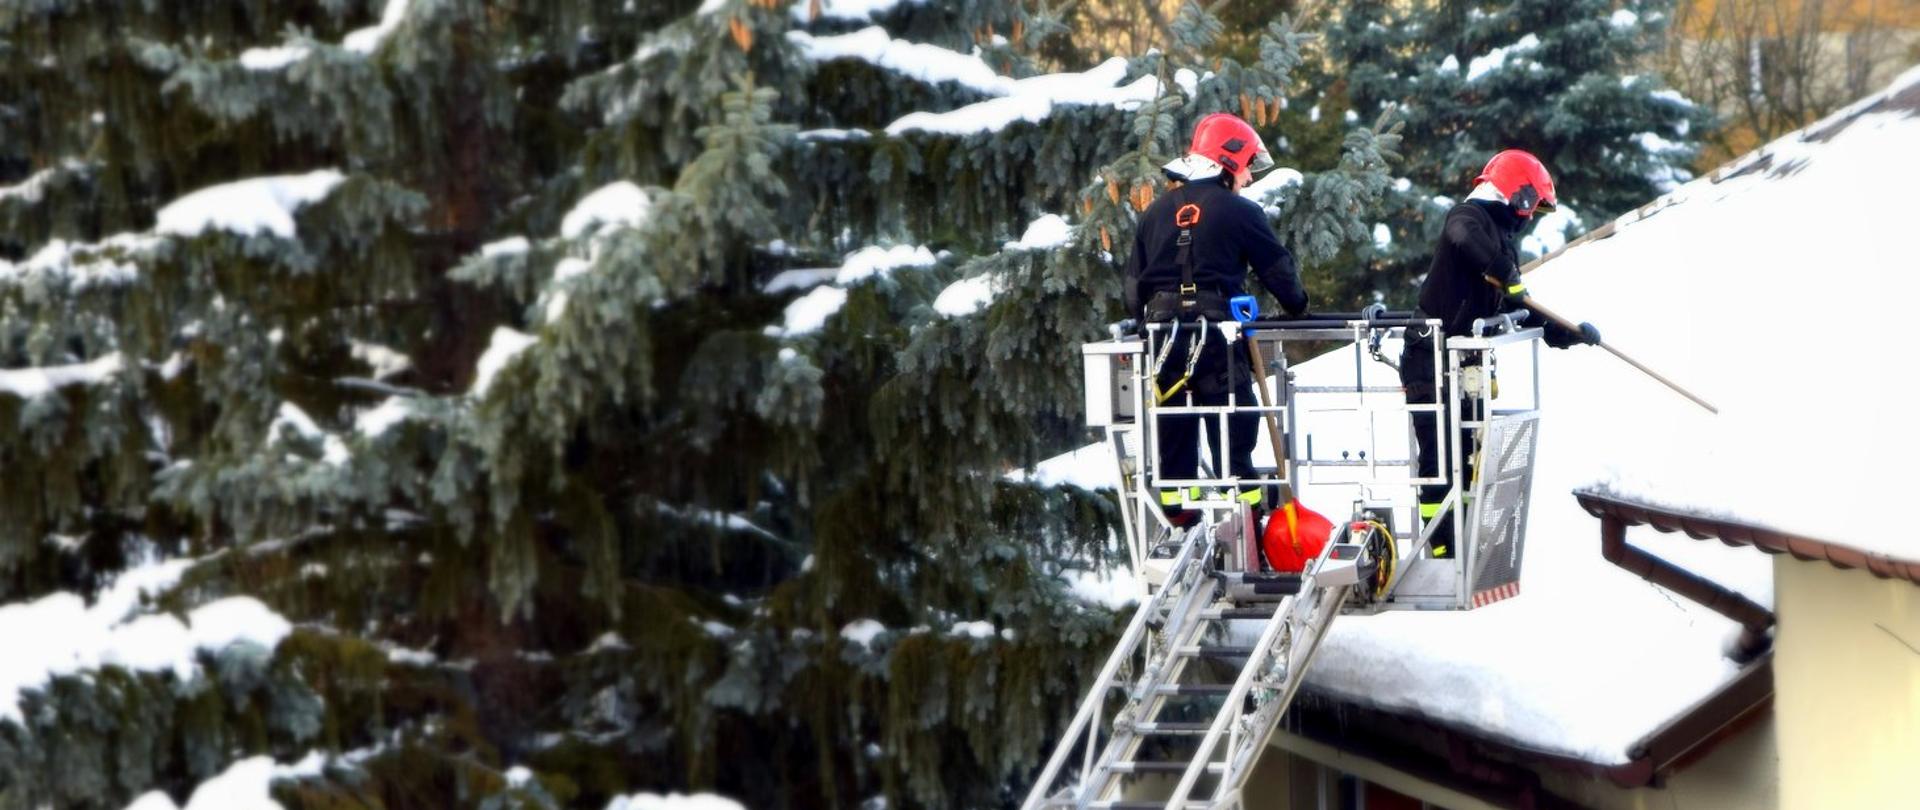 Zdjęcie zrobione na zewnątrz. Dwóch strażaków, będących w koszu drabiny mechanicznej, usuwa śnieg z dachu.